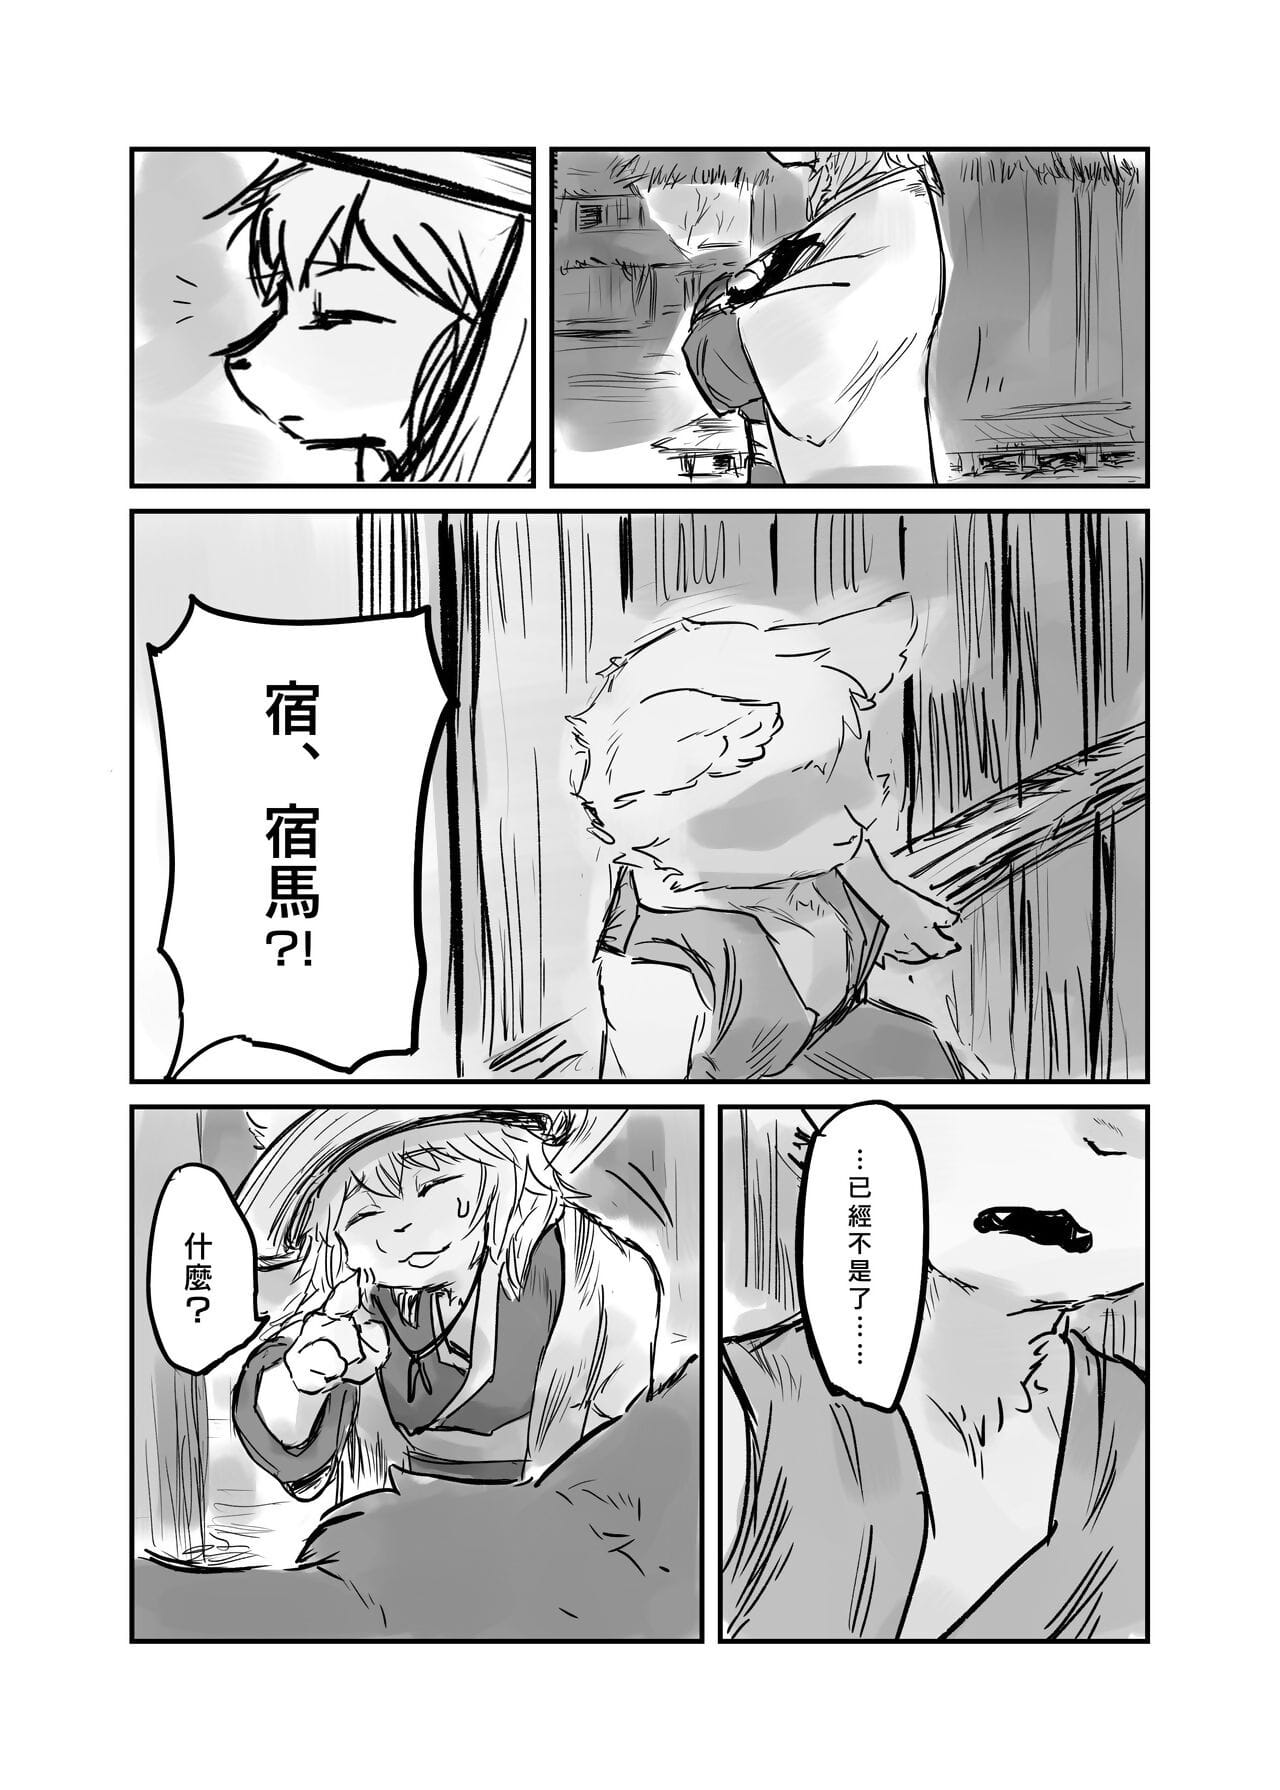 （the ziyaretçi 他乡之人 by：鬼流 page 1